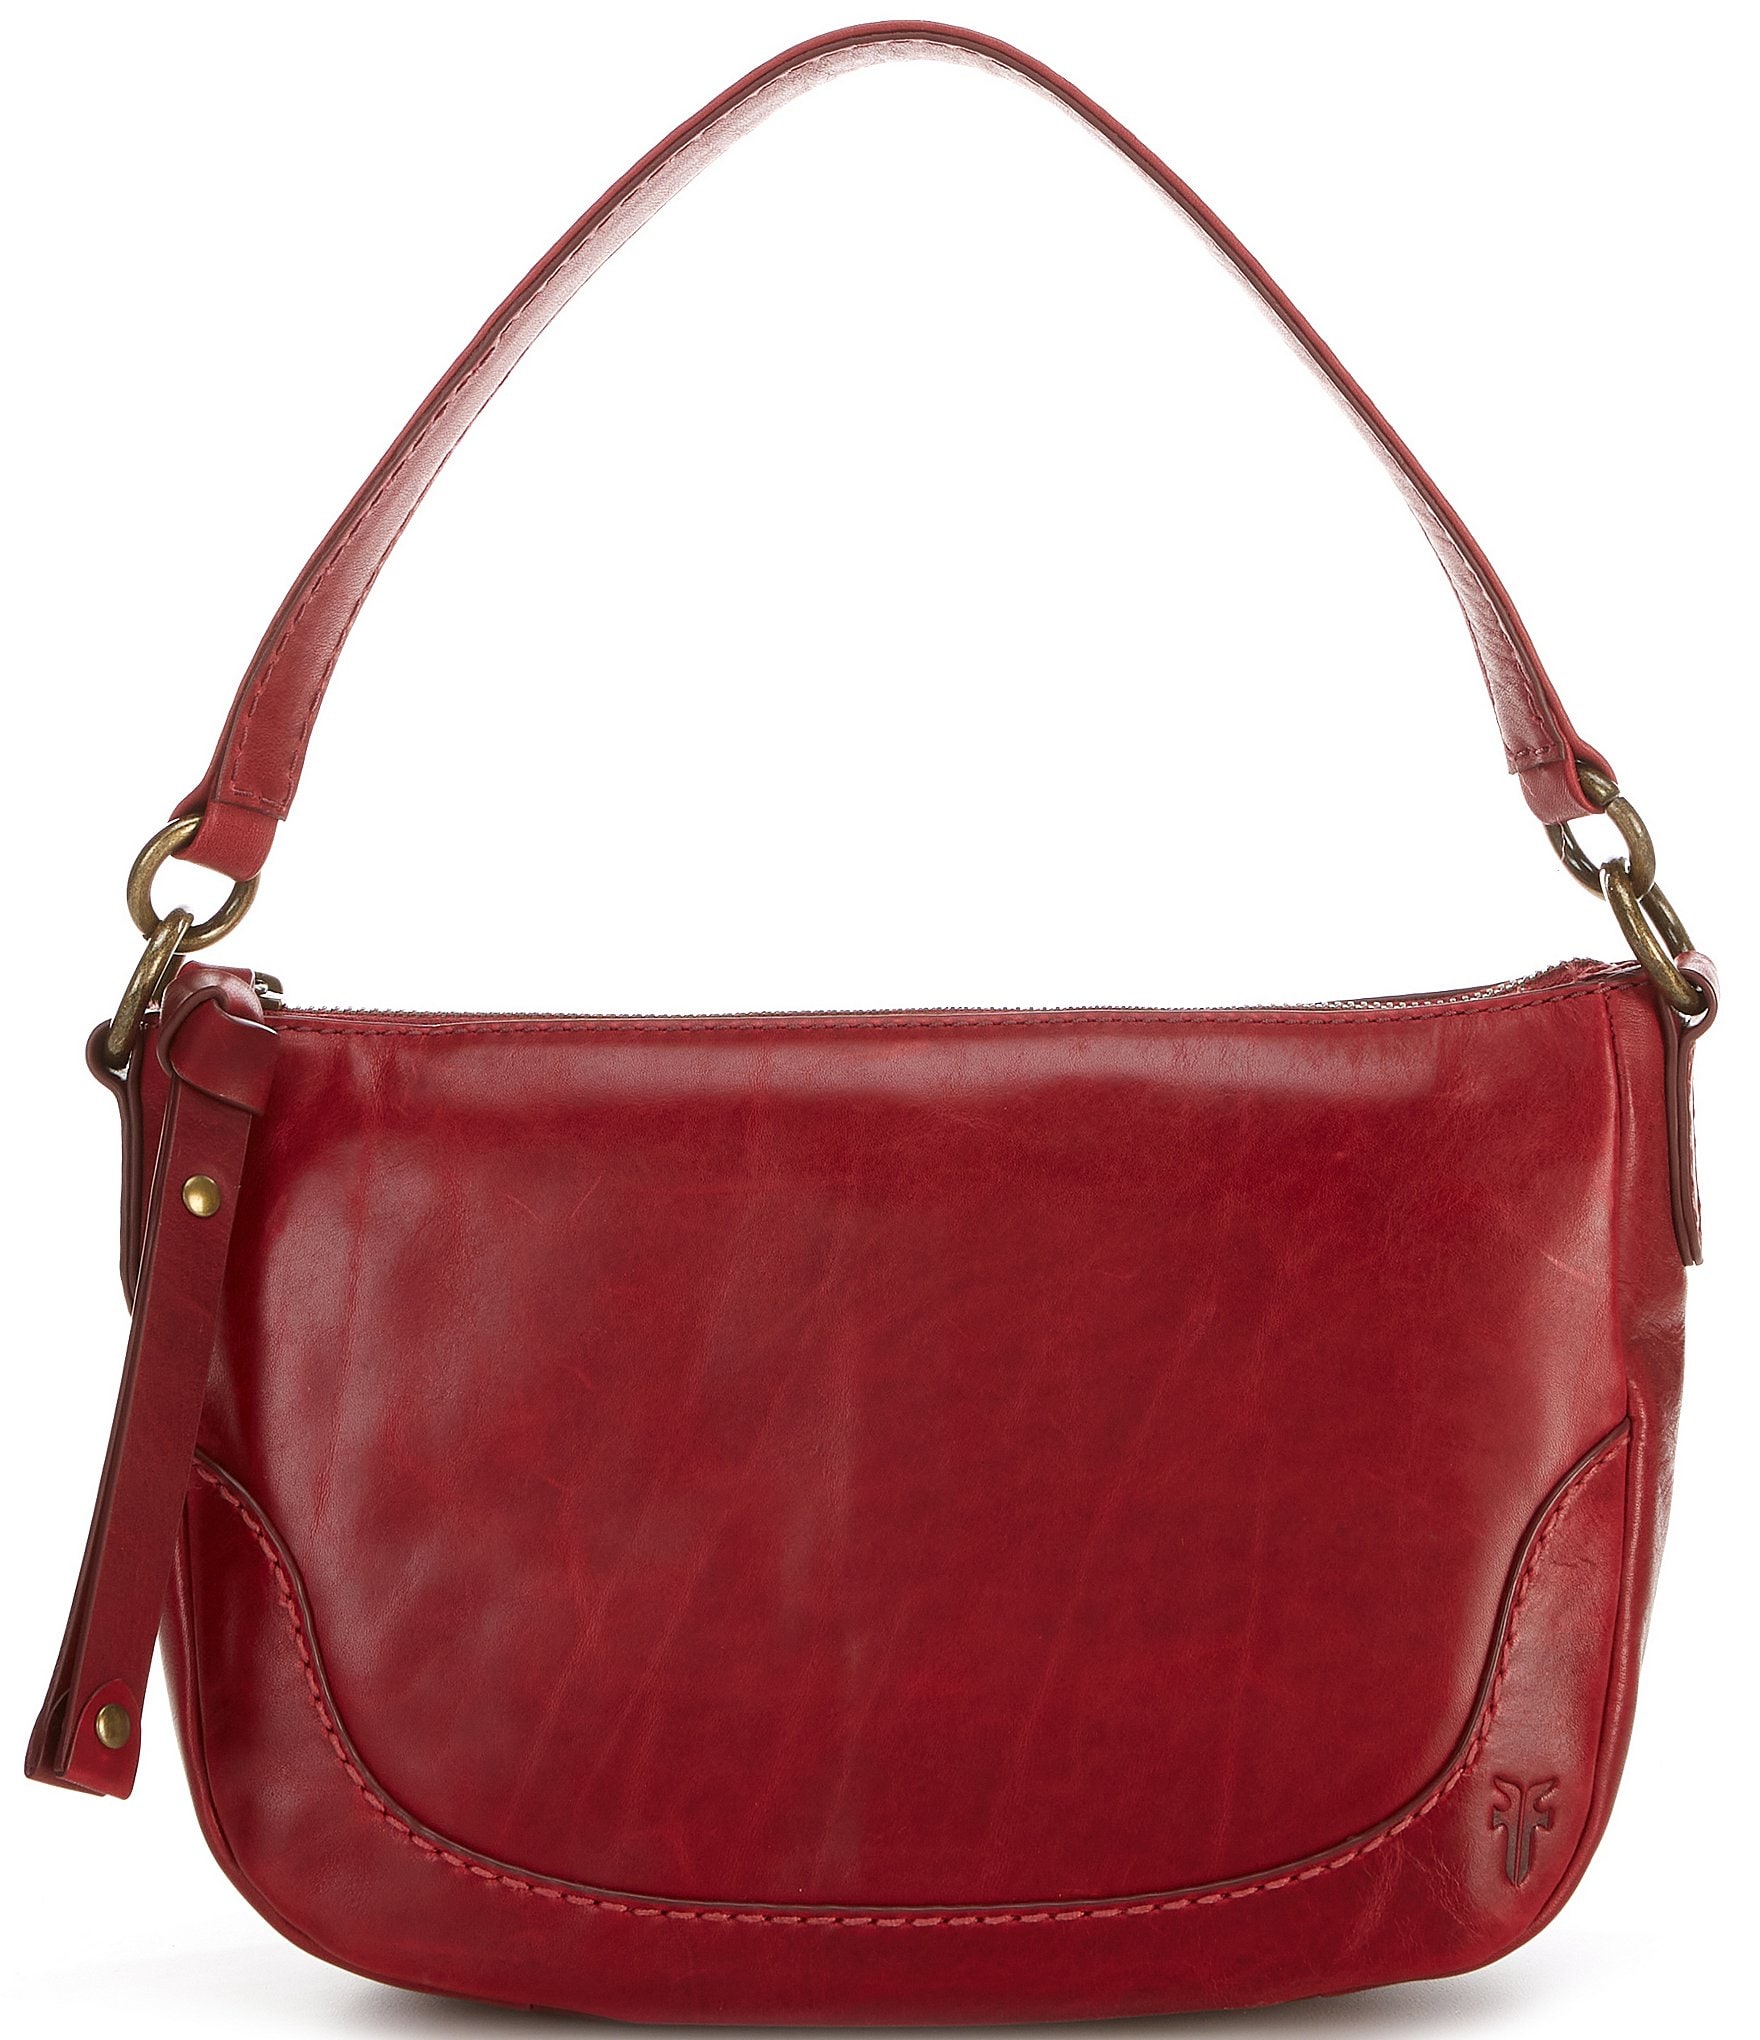 REBECCA MINKOFF Handbags | Dillard's